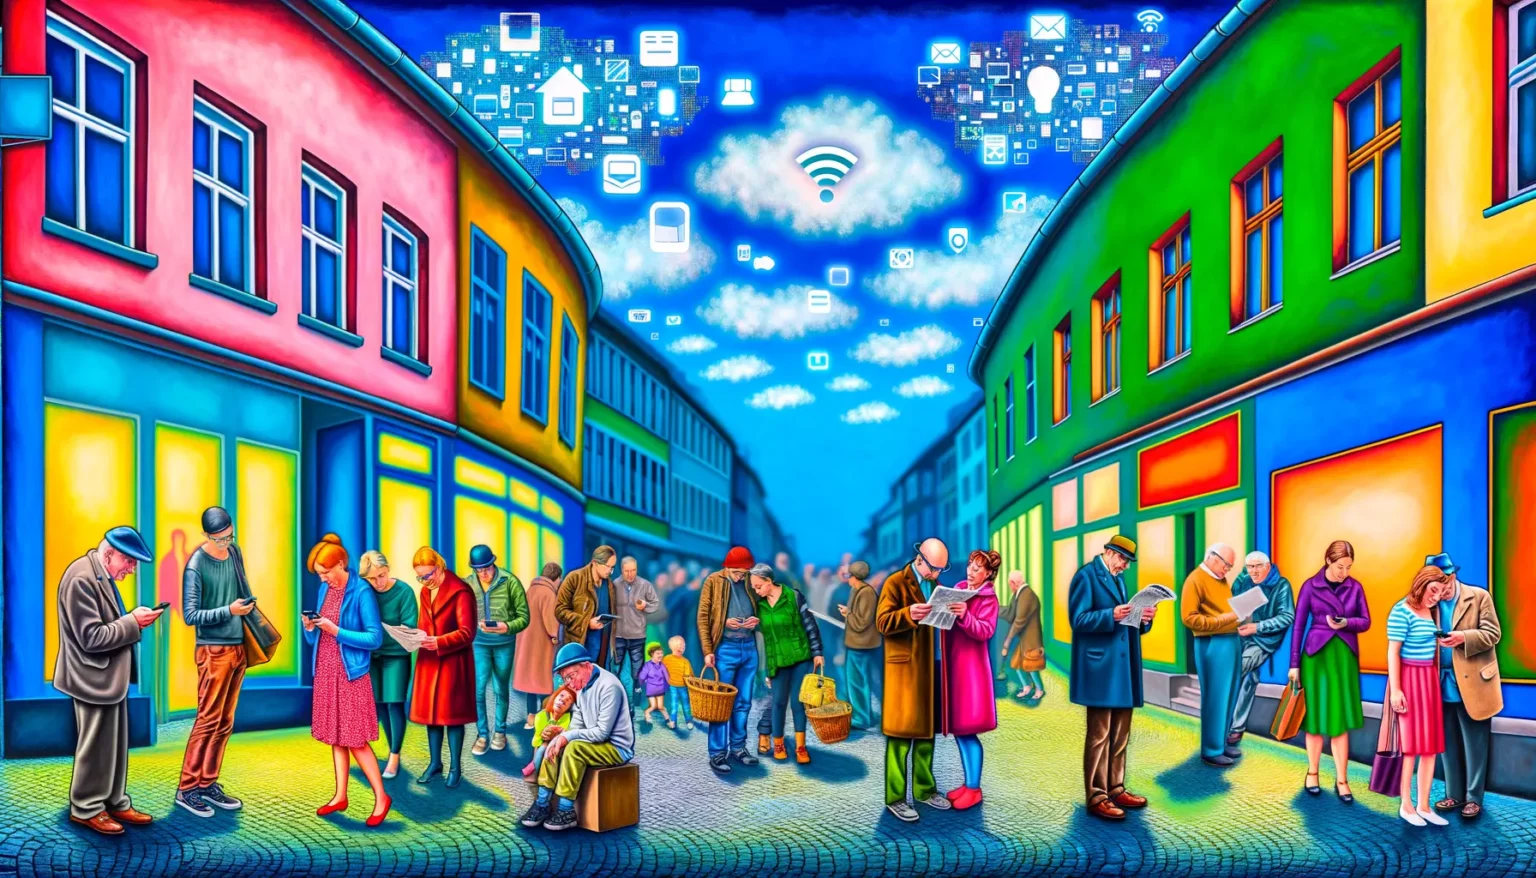 Eine lebhafte, bunte Zeichnung einer belebten Straßenszene mit Menschen, die auf digitalen Geräten tippen, in einem Kontrast von altmodischer Kleidung und Umgebung sowie moderner Technologie, symbolisiert durch ikonische App-Symbole und ein großes Wi-Fi-Symbol in der mit Wolken gefüllten Luft.